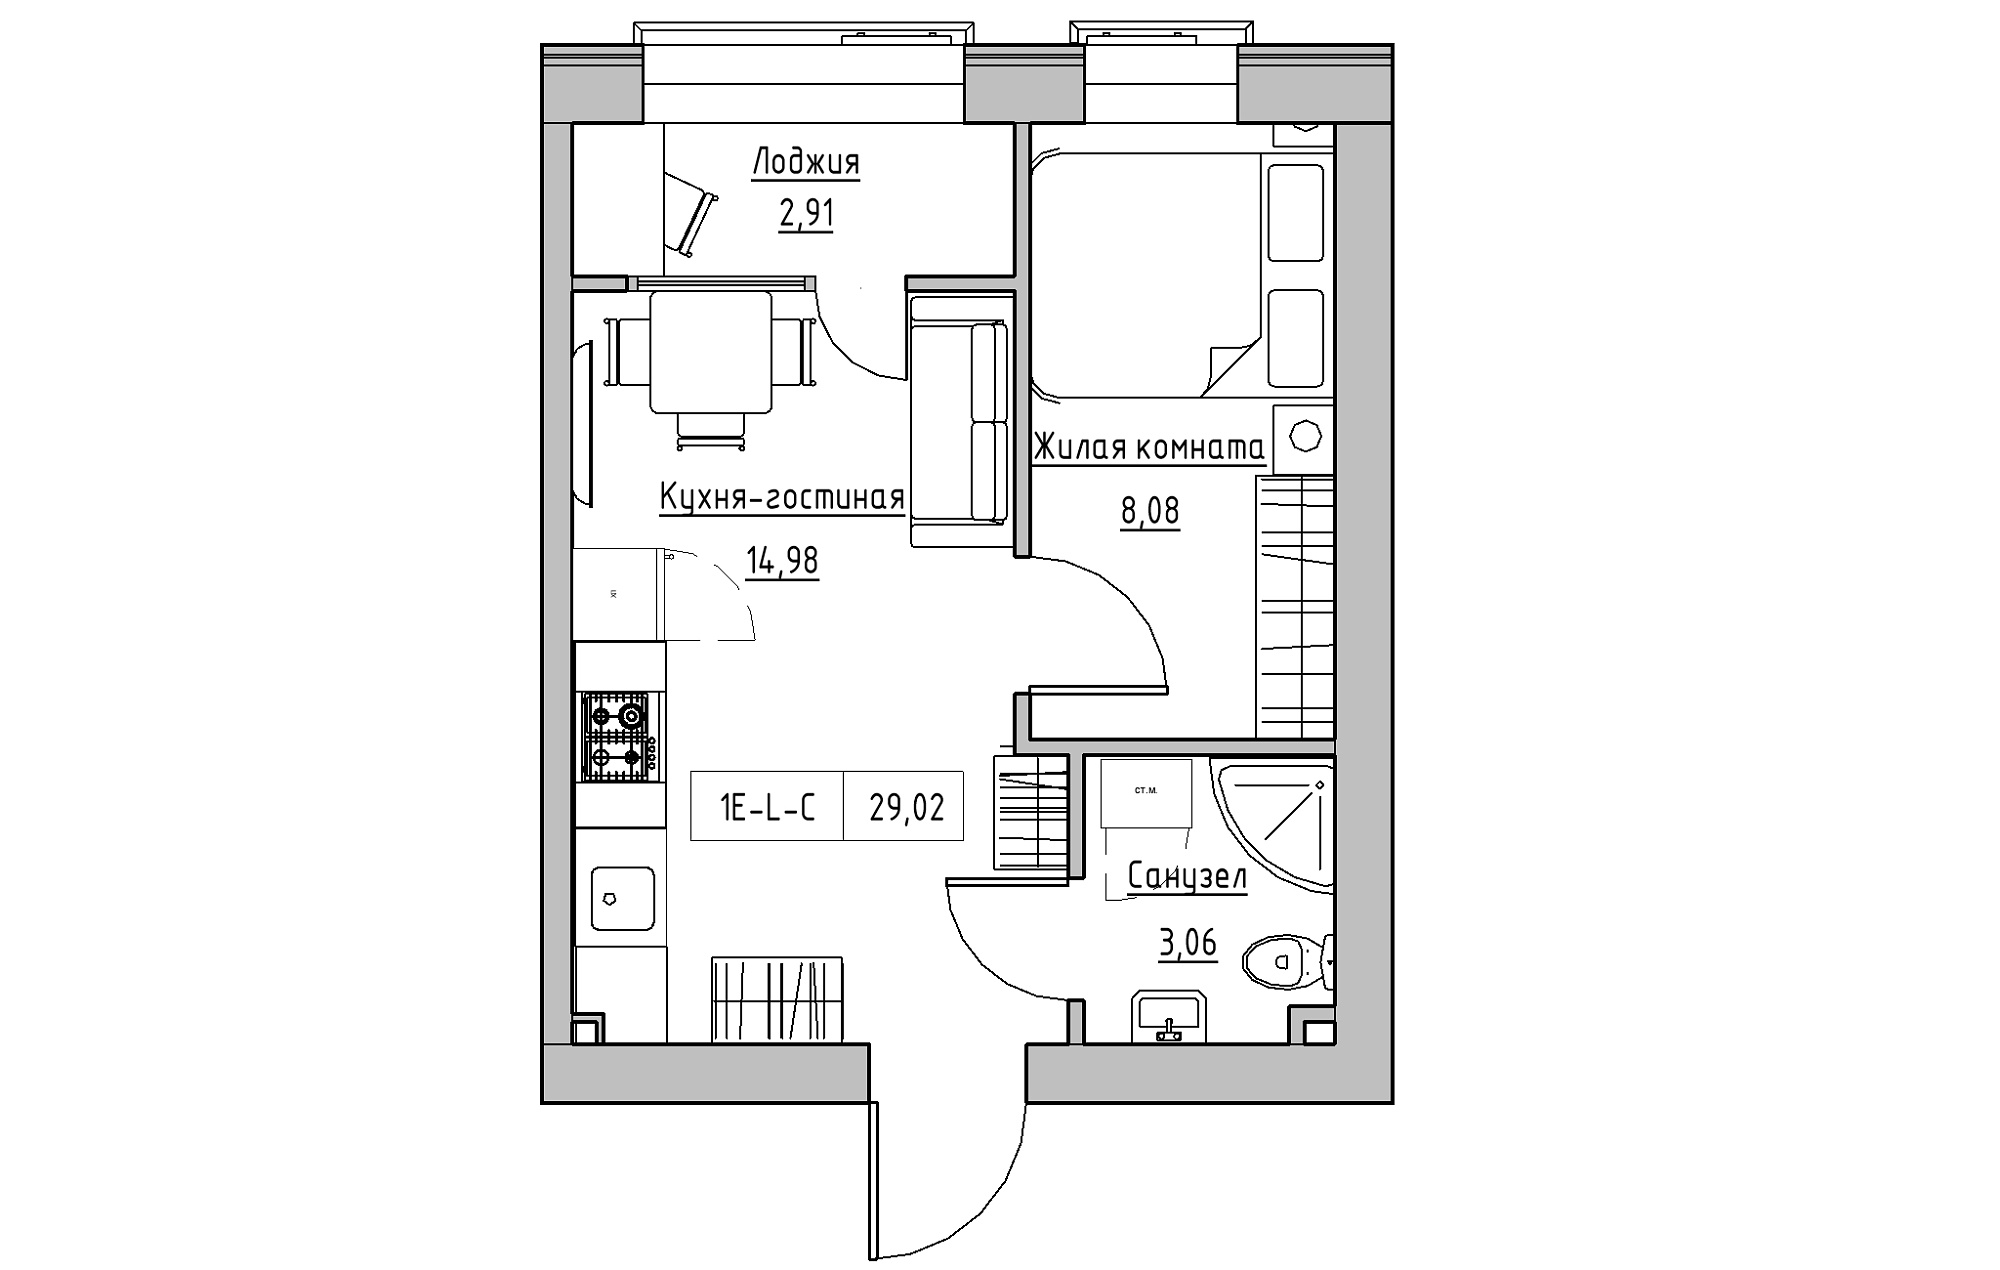 Планировка 1-к квартира площей 29.01м2, KS-018-02/0007.